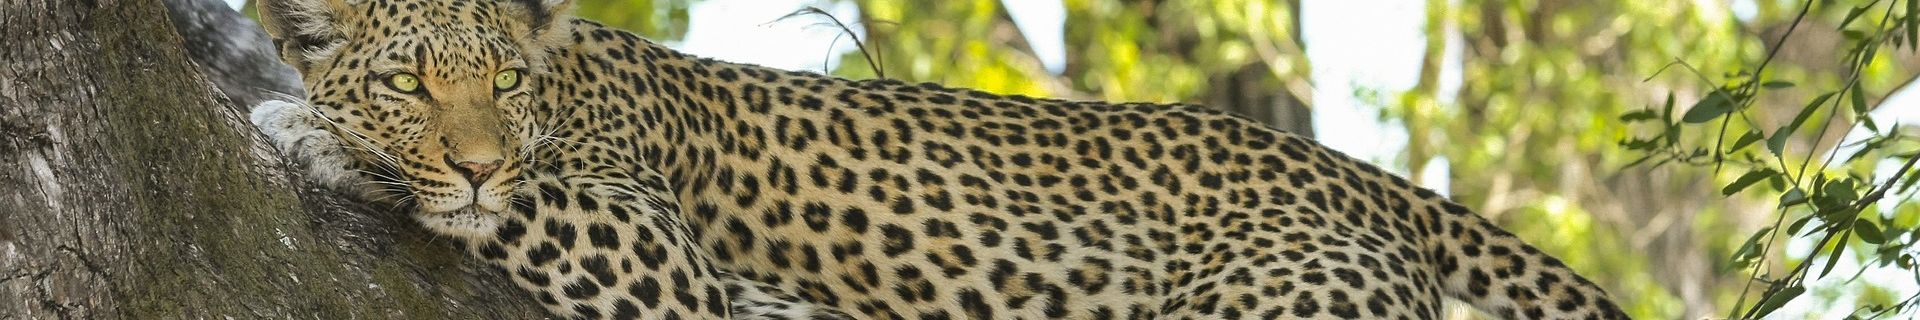 Leopard auf einem Baum in Tansania